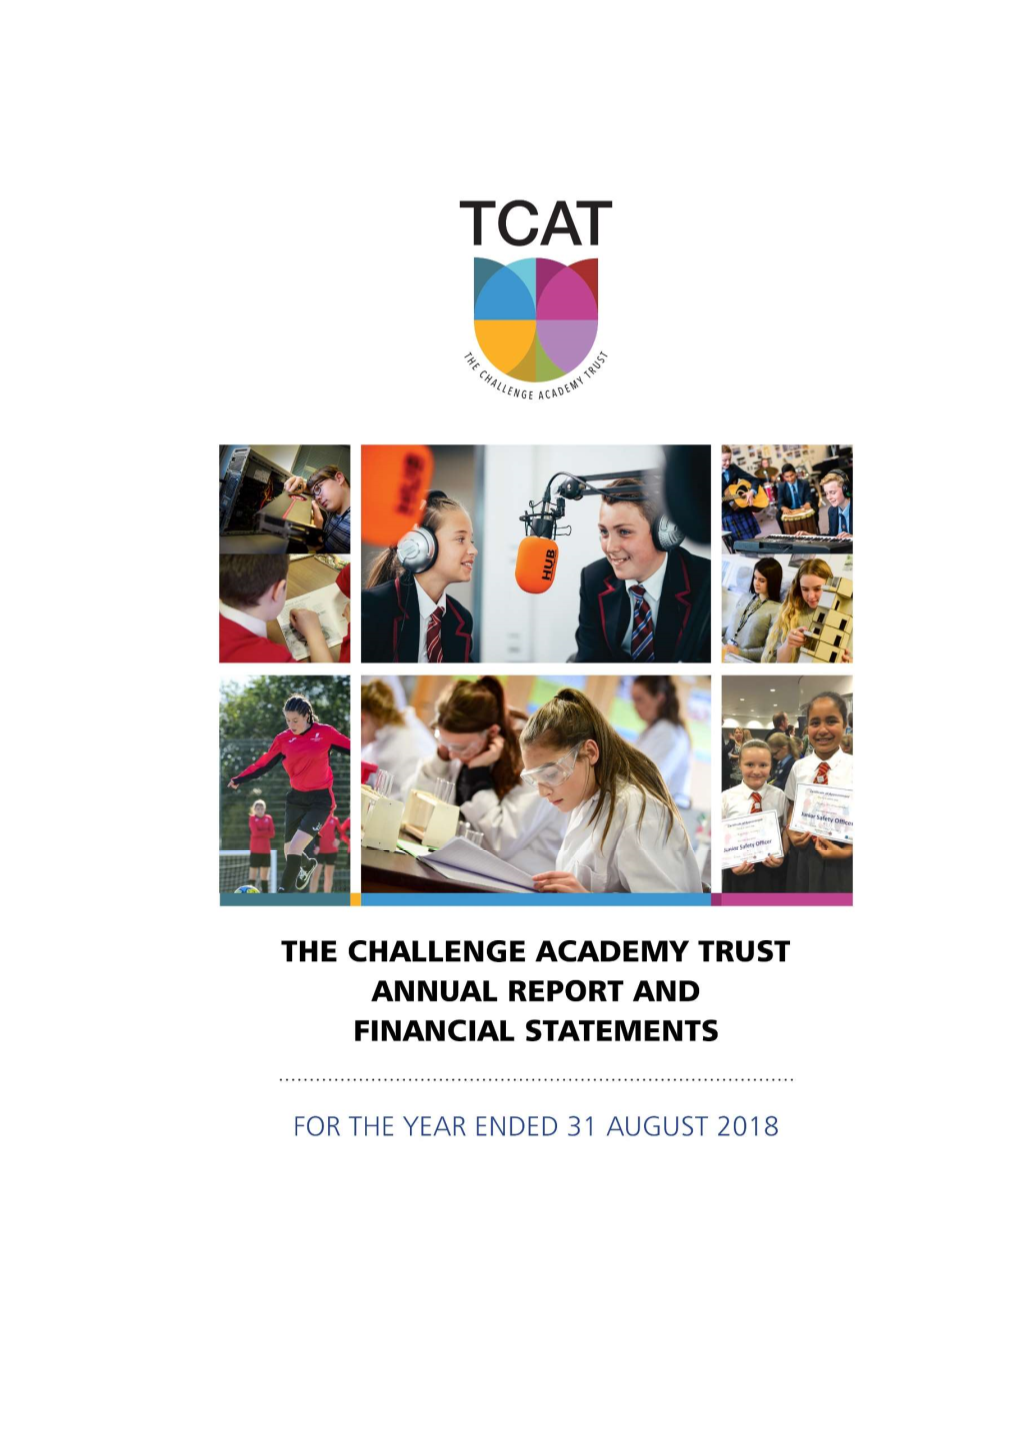 Annual-Report-TCAT-1718.Pdf